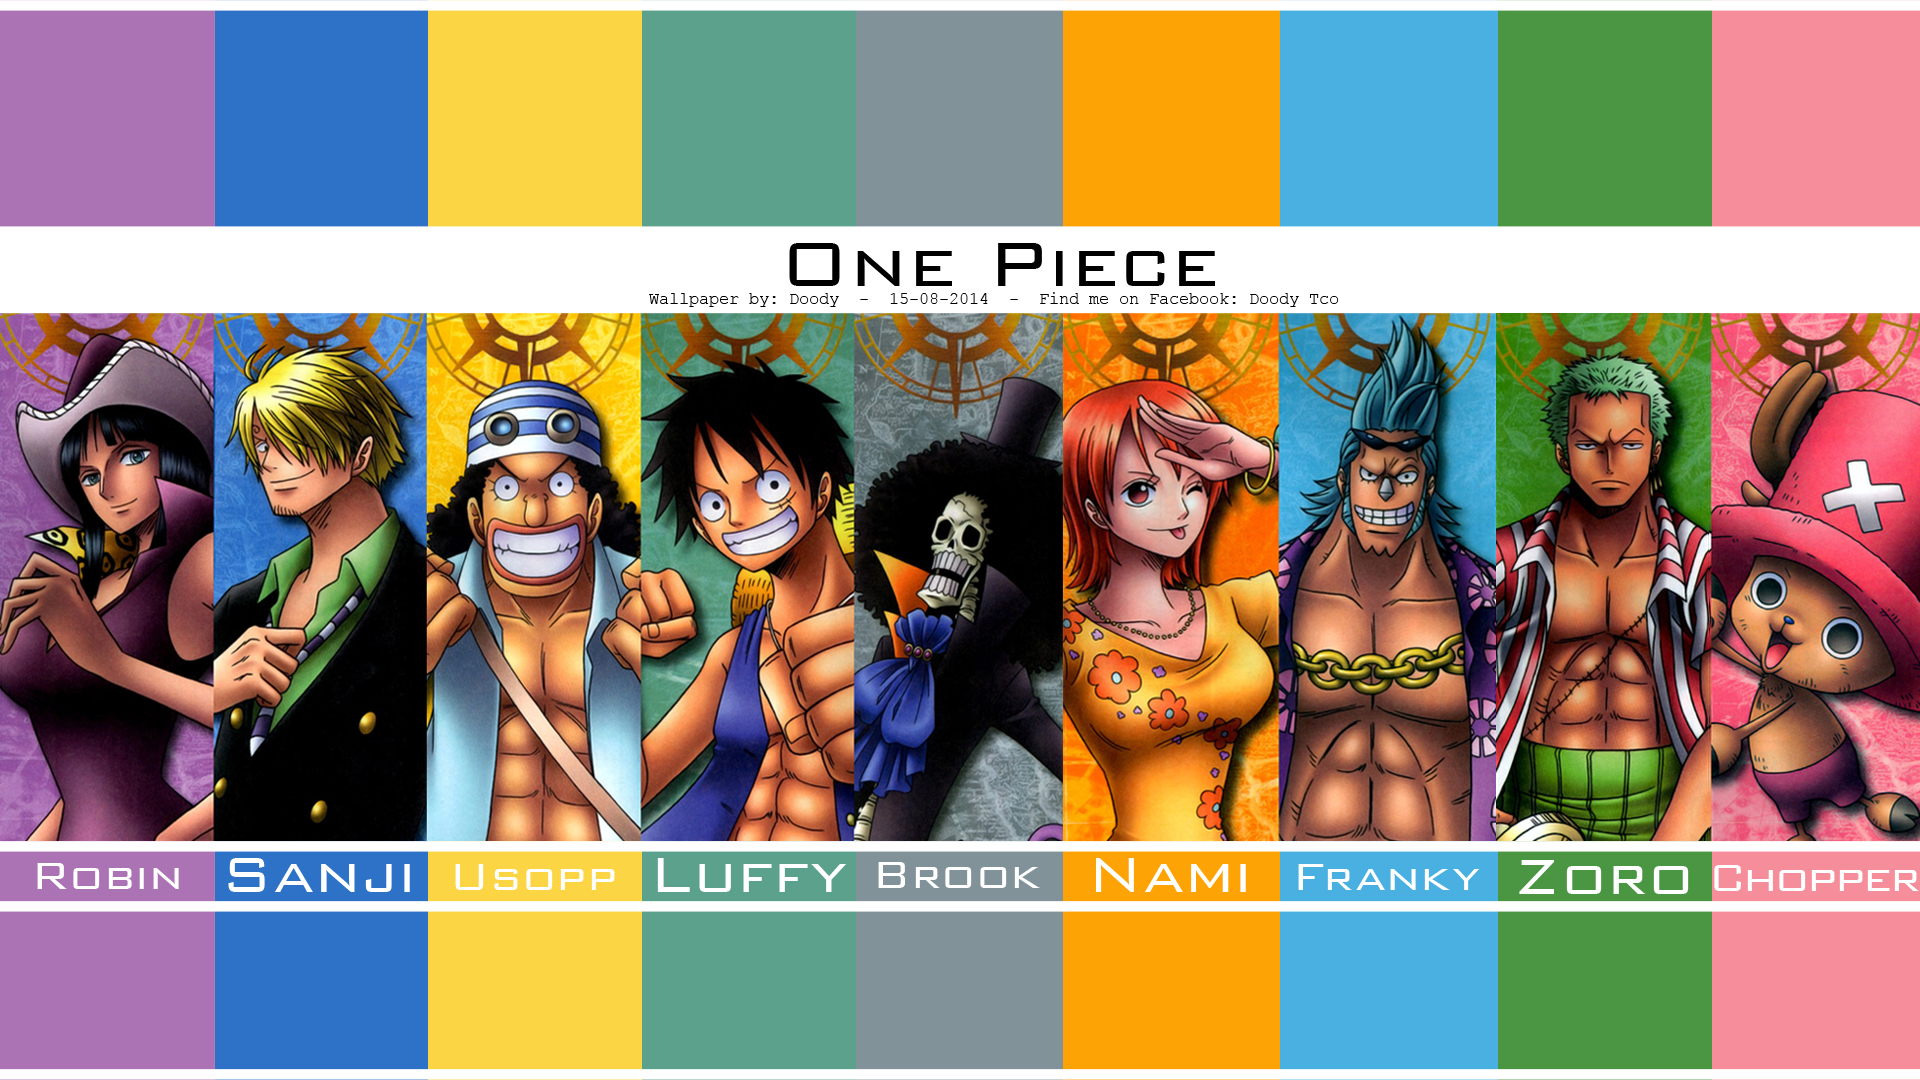 Descarga gratuita de fondo de pantalla para móvil de Animado, One Piece, Tony Tony Chopper, Usopp (Una Pieza), Roronoa Zoro, Monkey D Luffy, Nami (Una Pieza), Sanji (Una Pieza), Arroyo (Una Pieza), Nico Robin, Franky (Una Pieza).